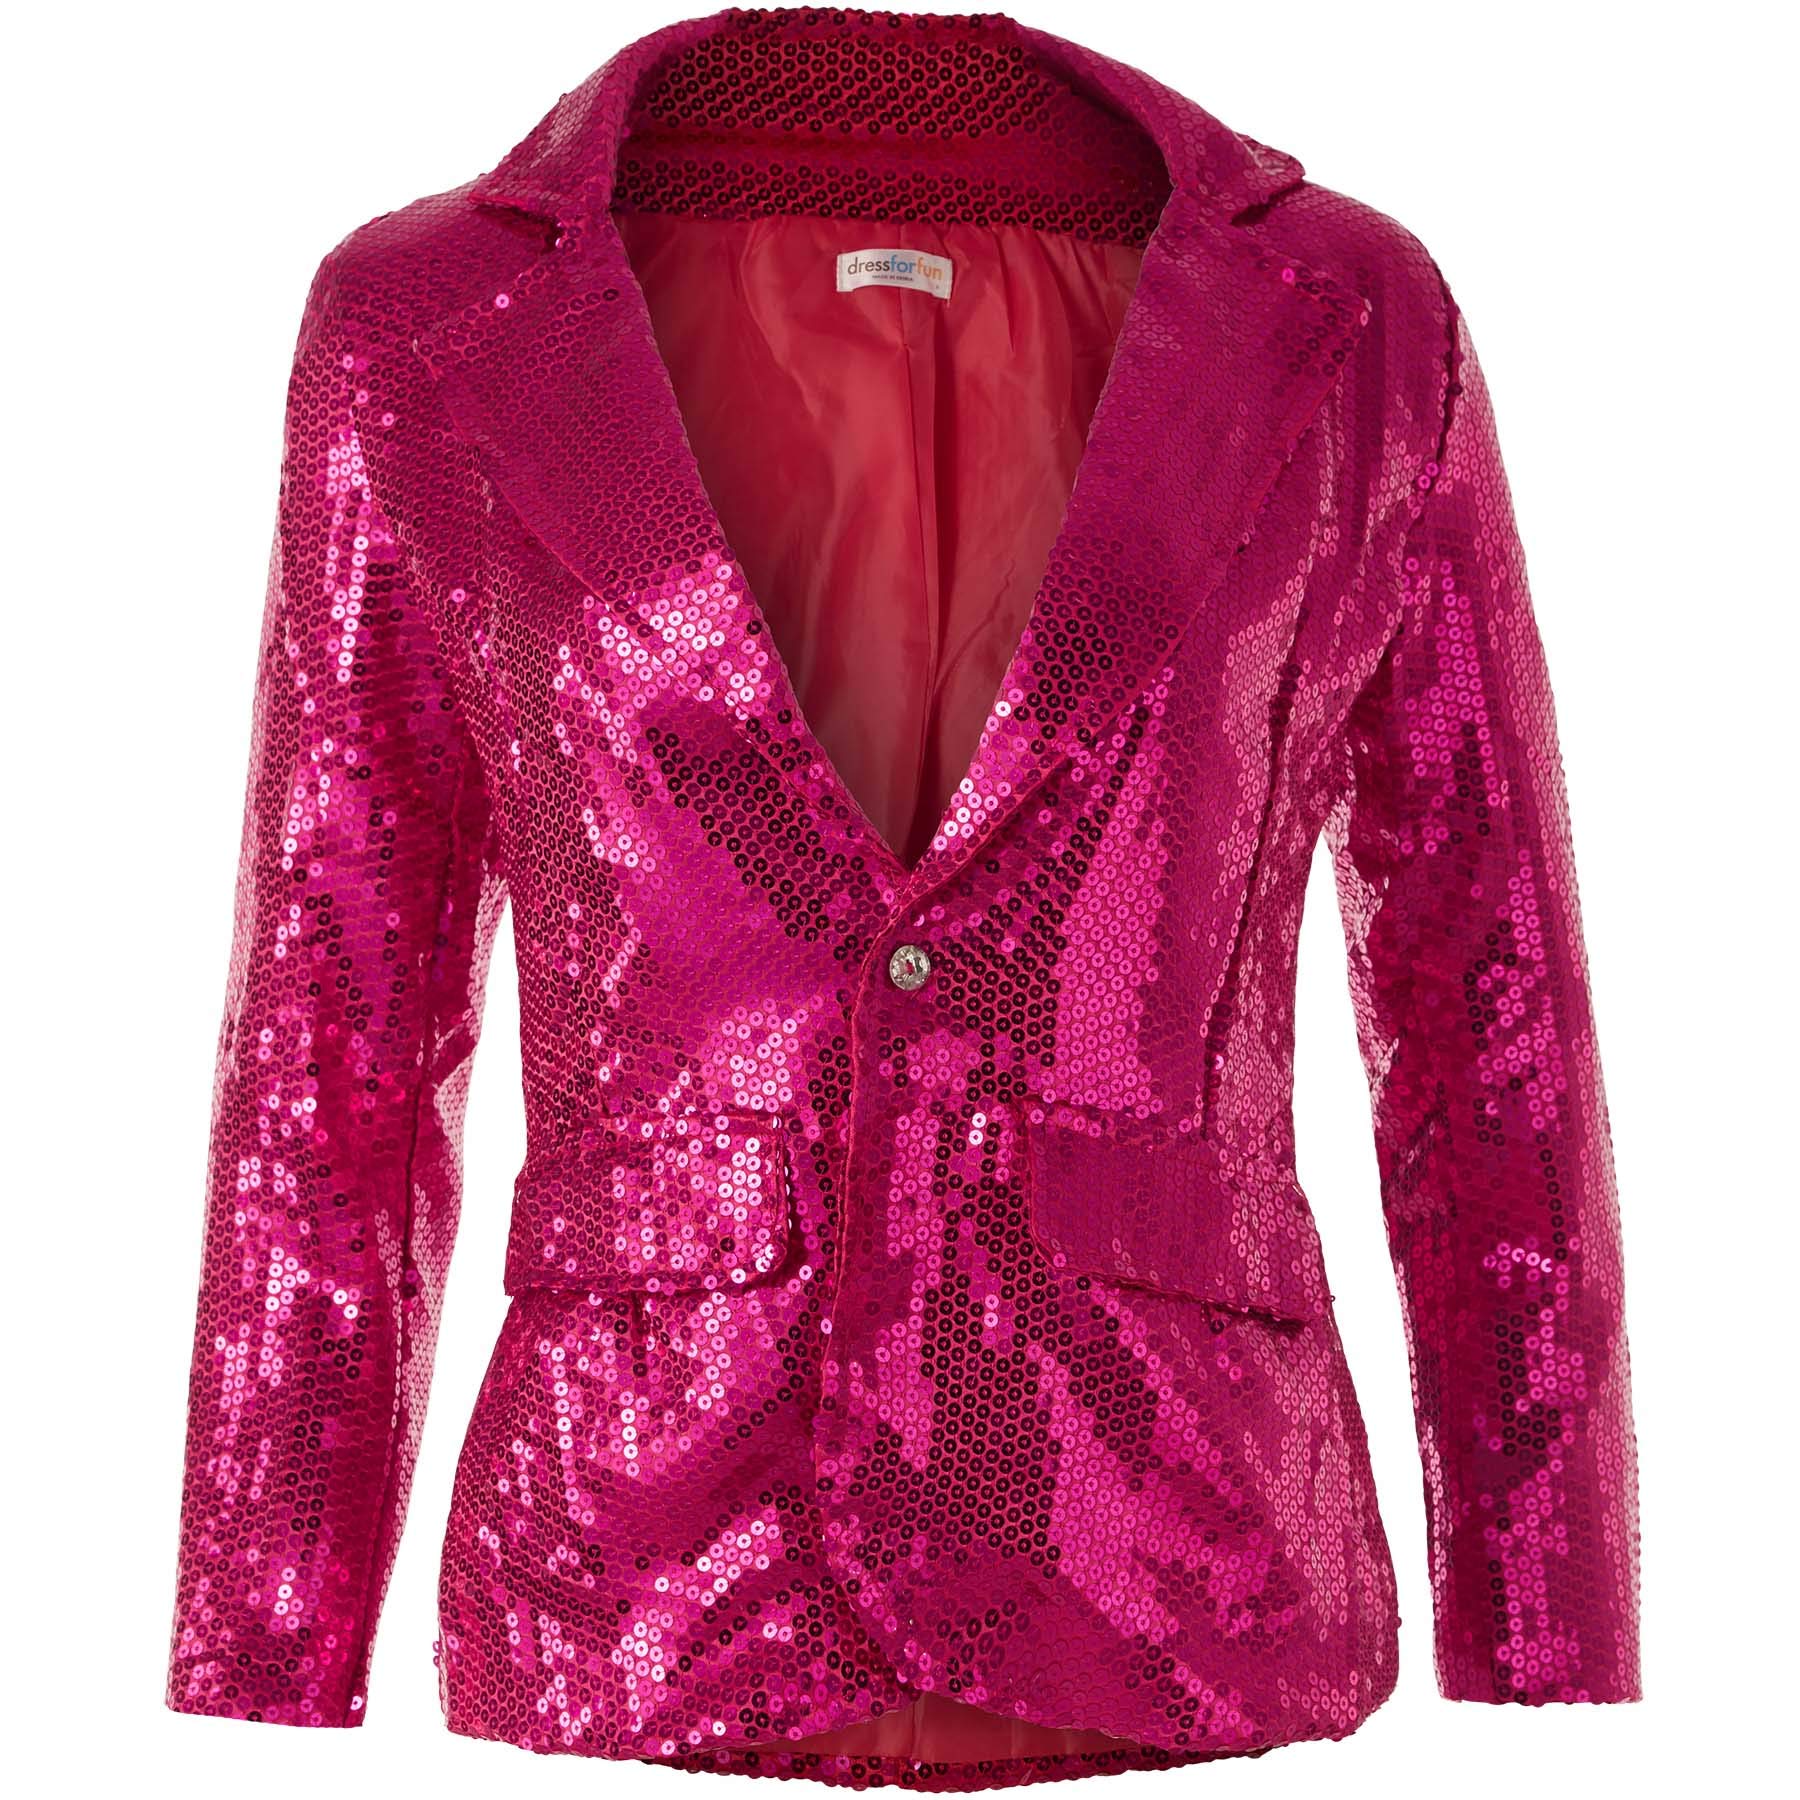 dressforfun 900995 Damen Pailletten Blazer, Langarm Glitzer Jackett, pink - Diverse Größen - (L | 303878)